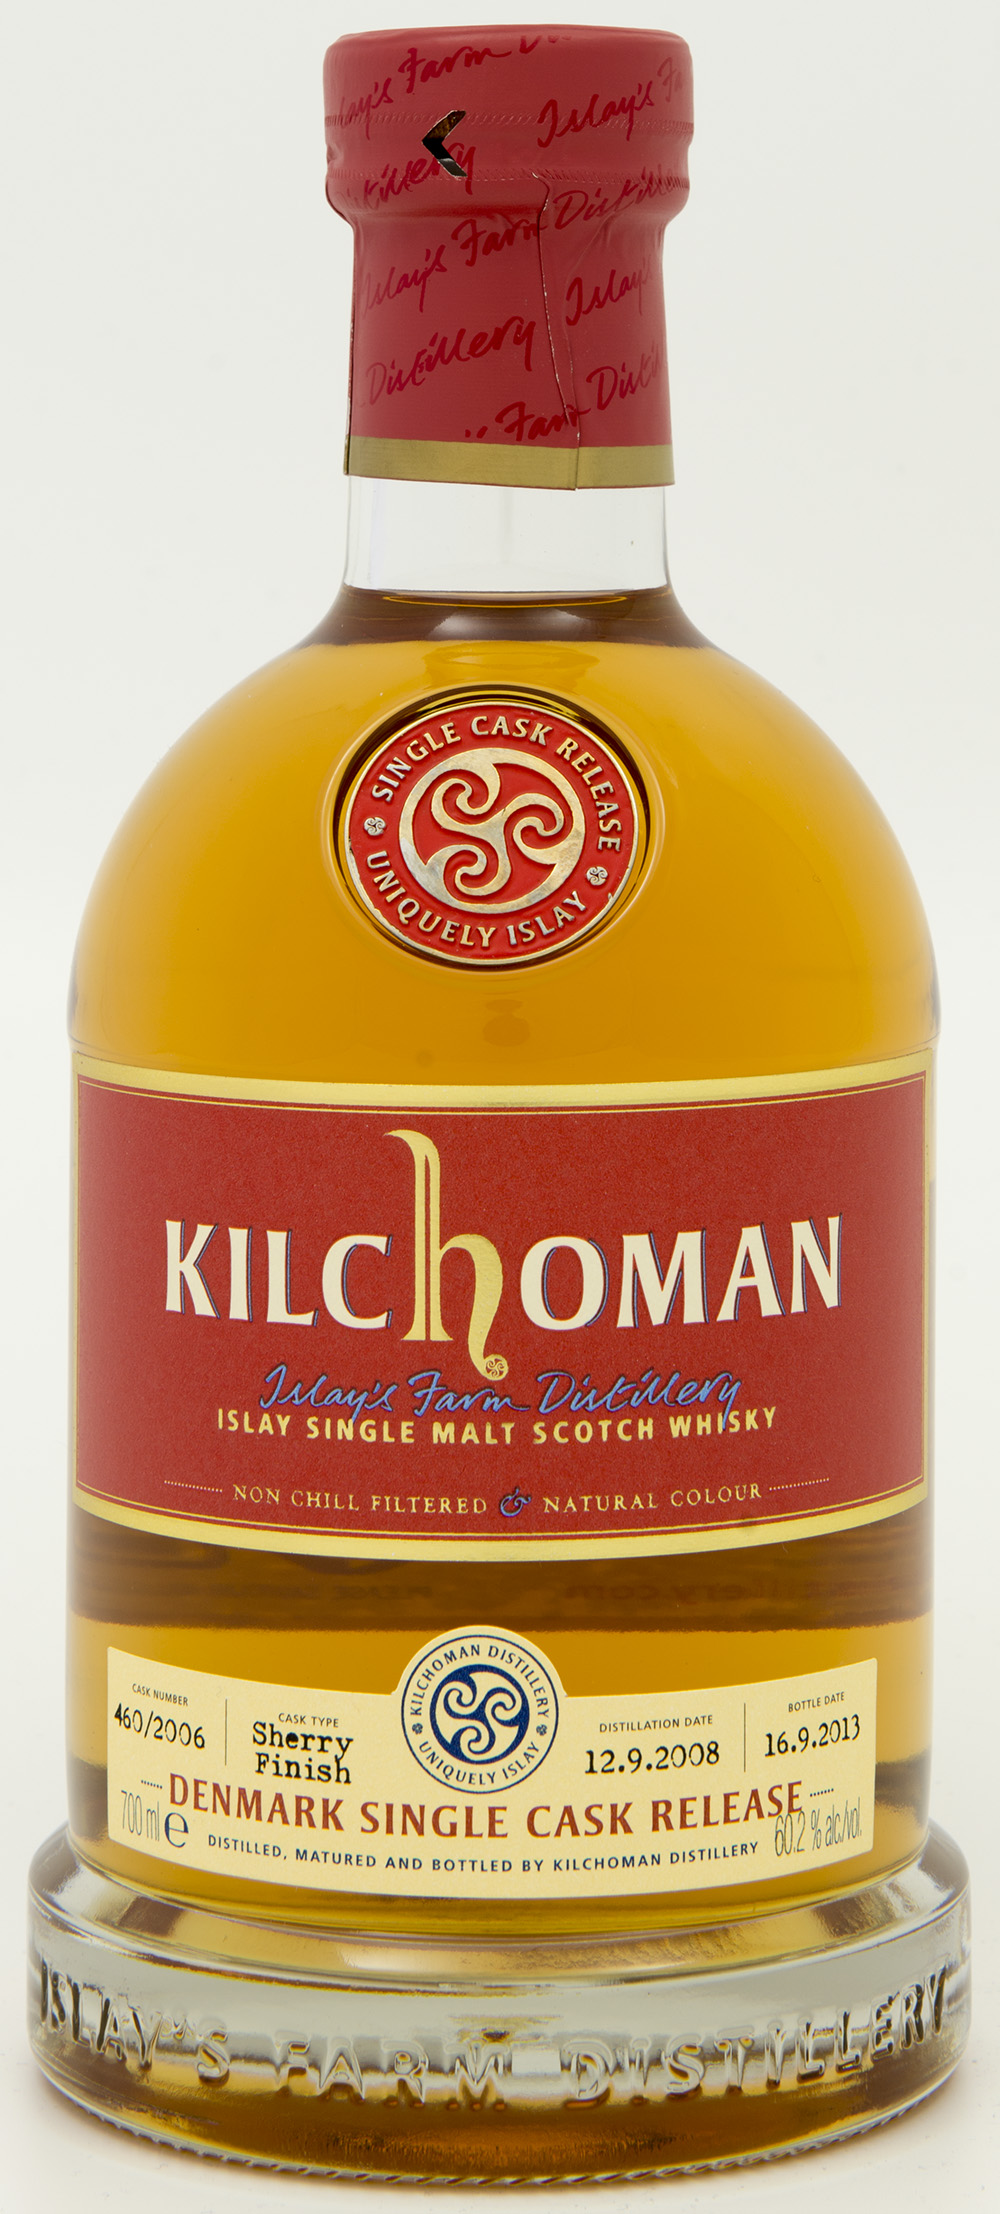 Billede: DSC_8199 - Kilchoman Denmark Single Cask Release 460-2006 - bottle front.jpg